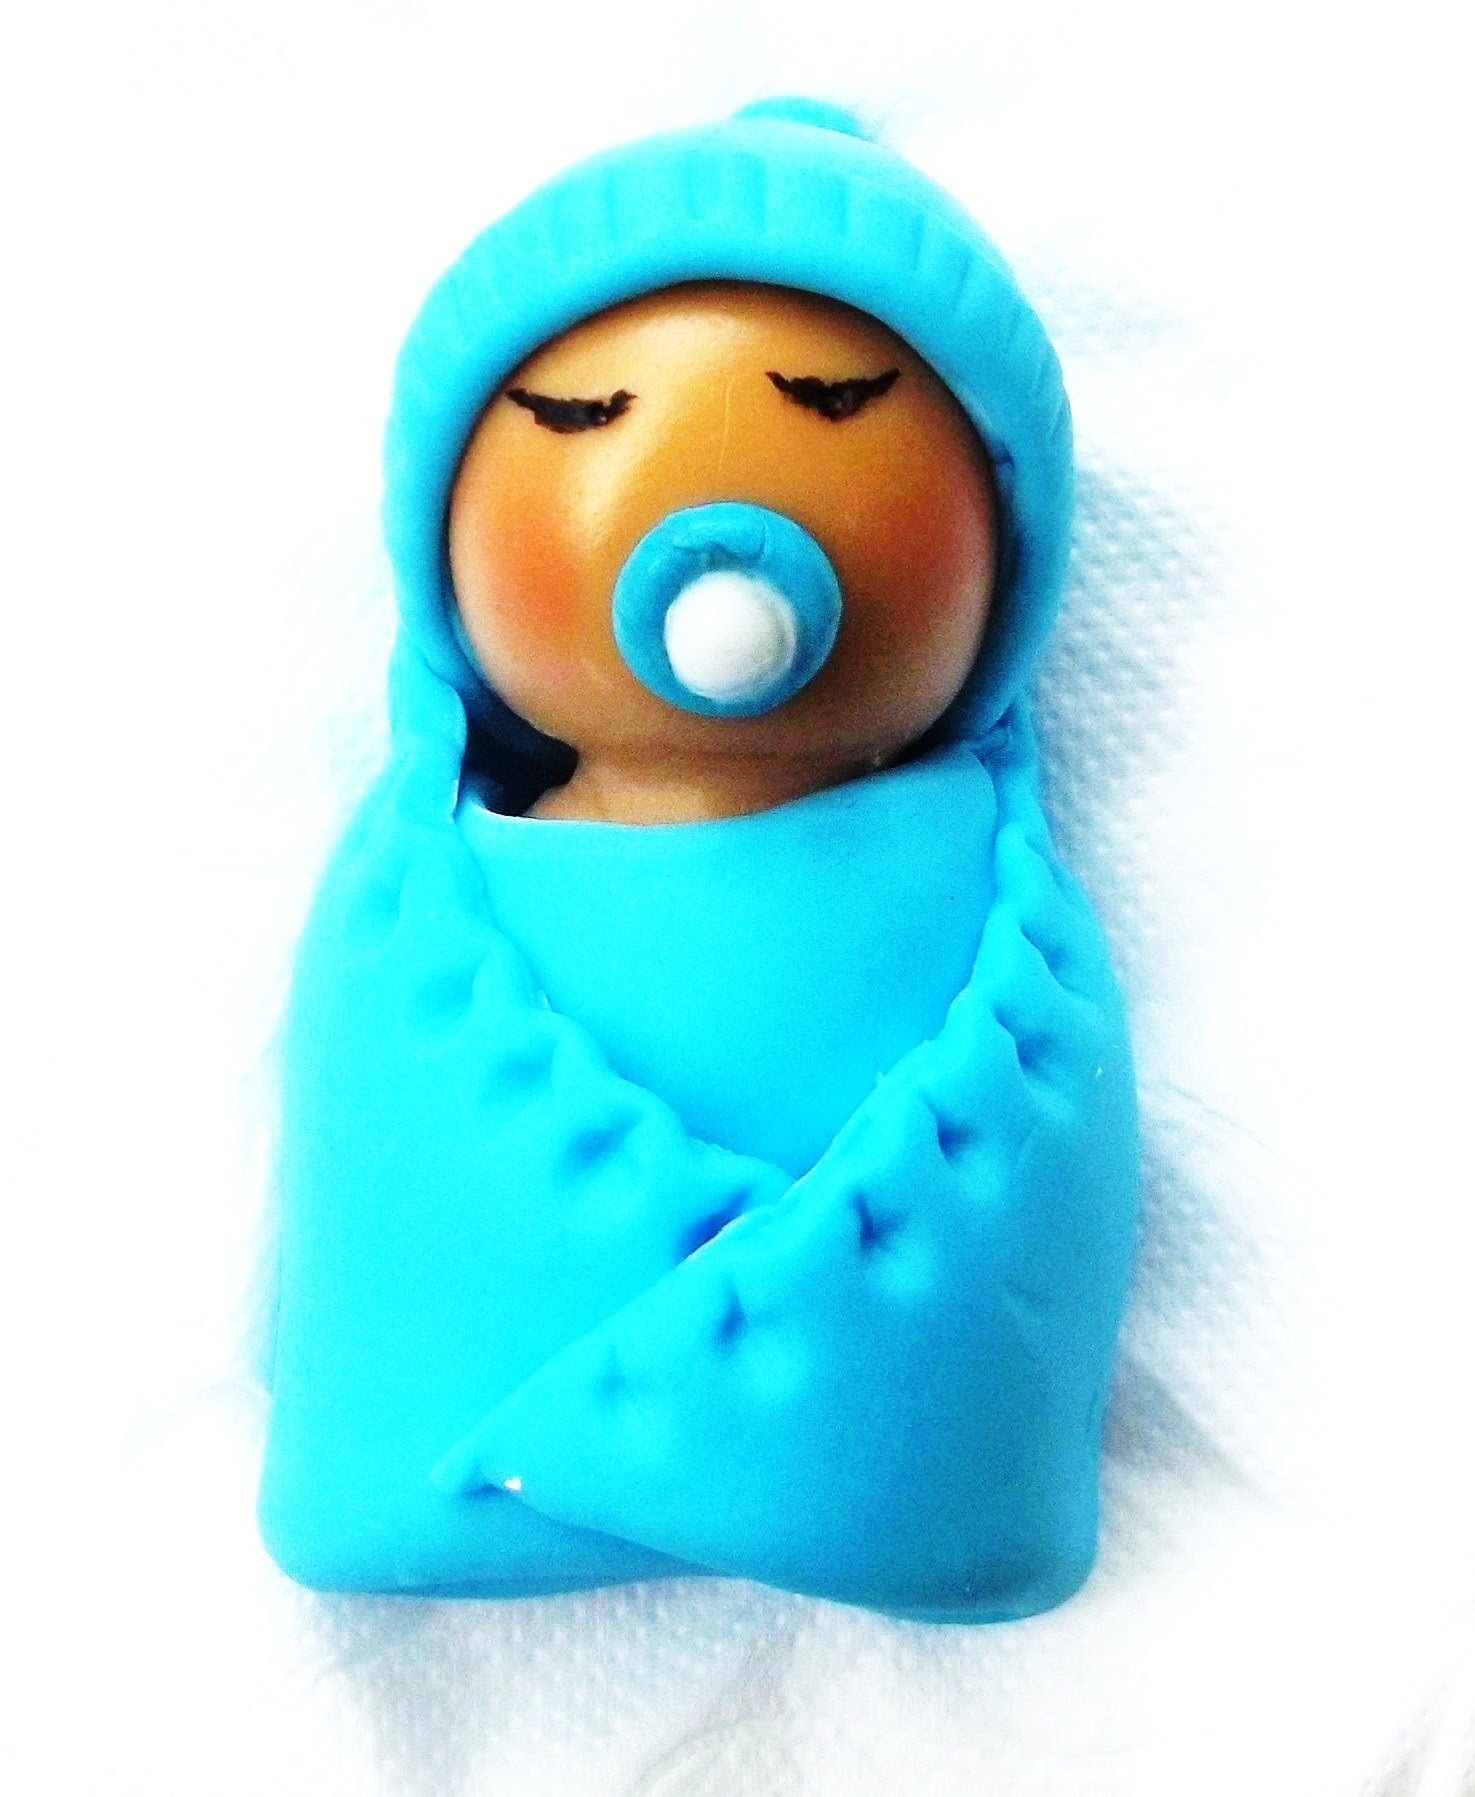 Artesanato: Bebê na manta feito em biscuit